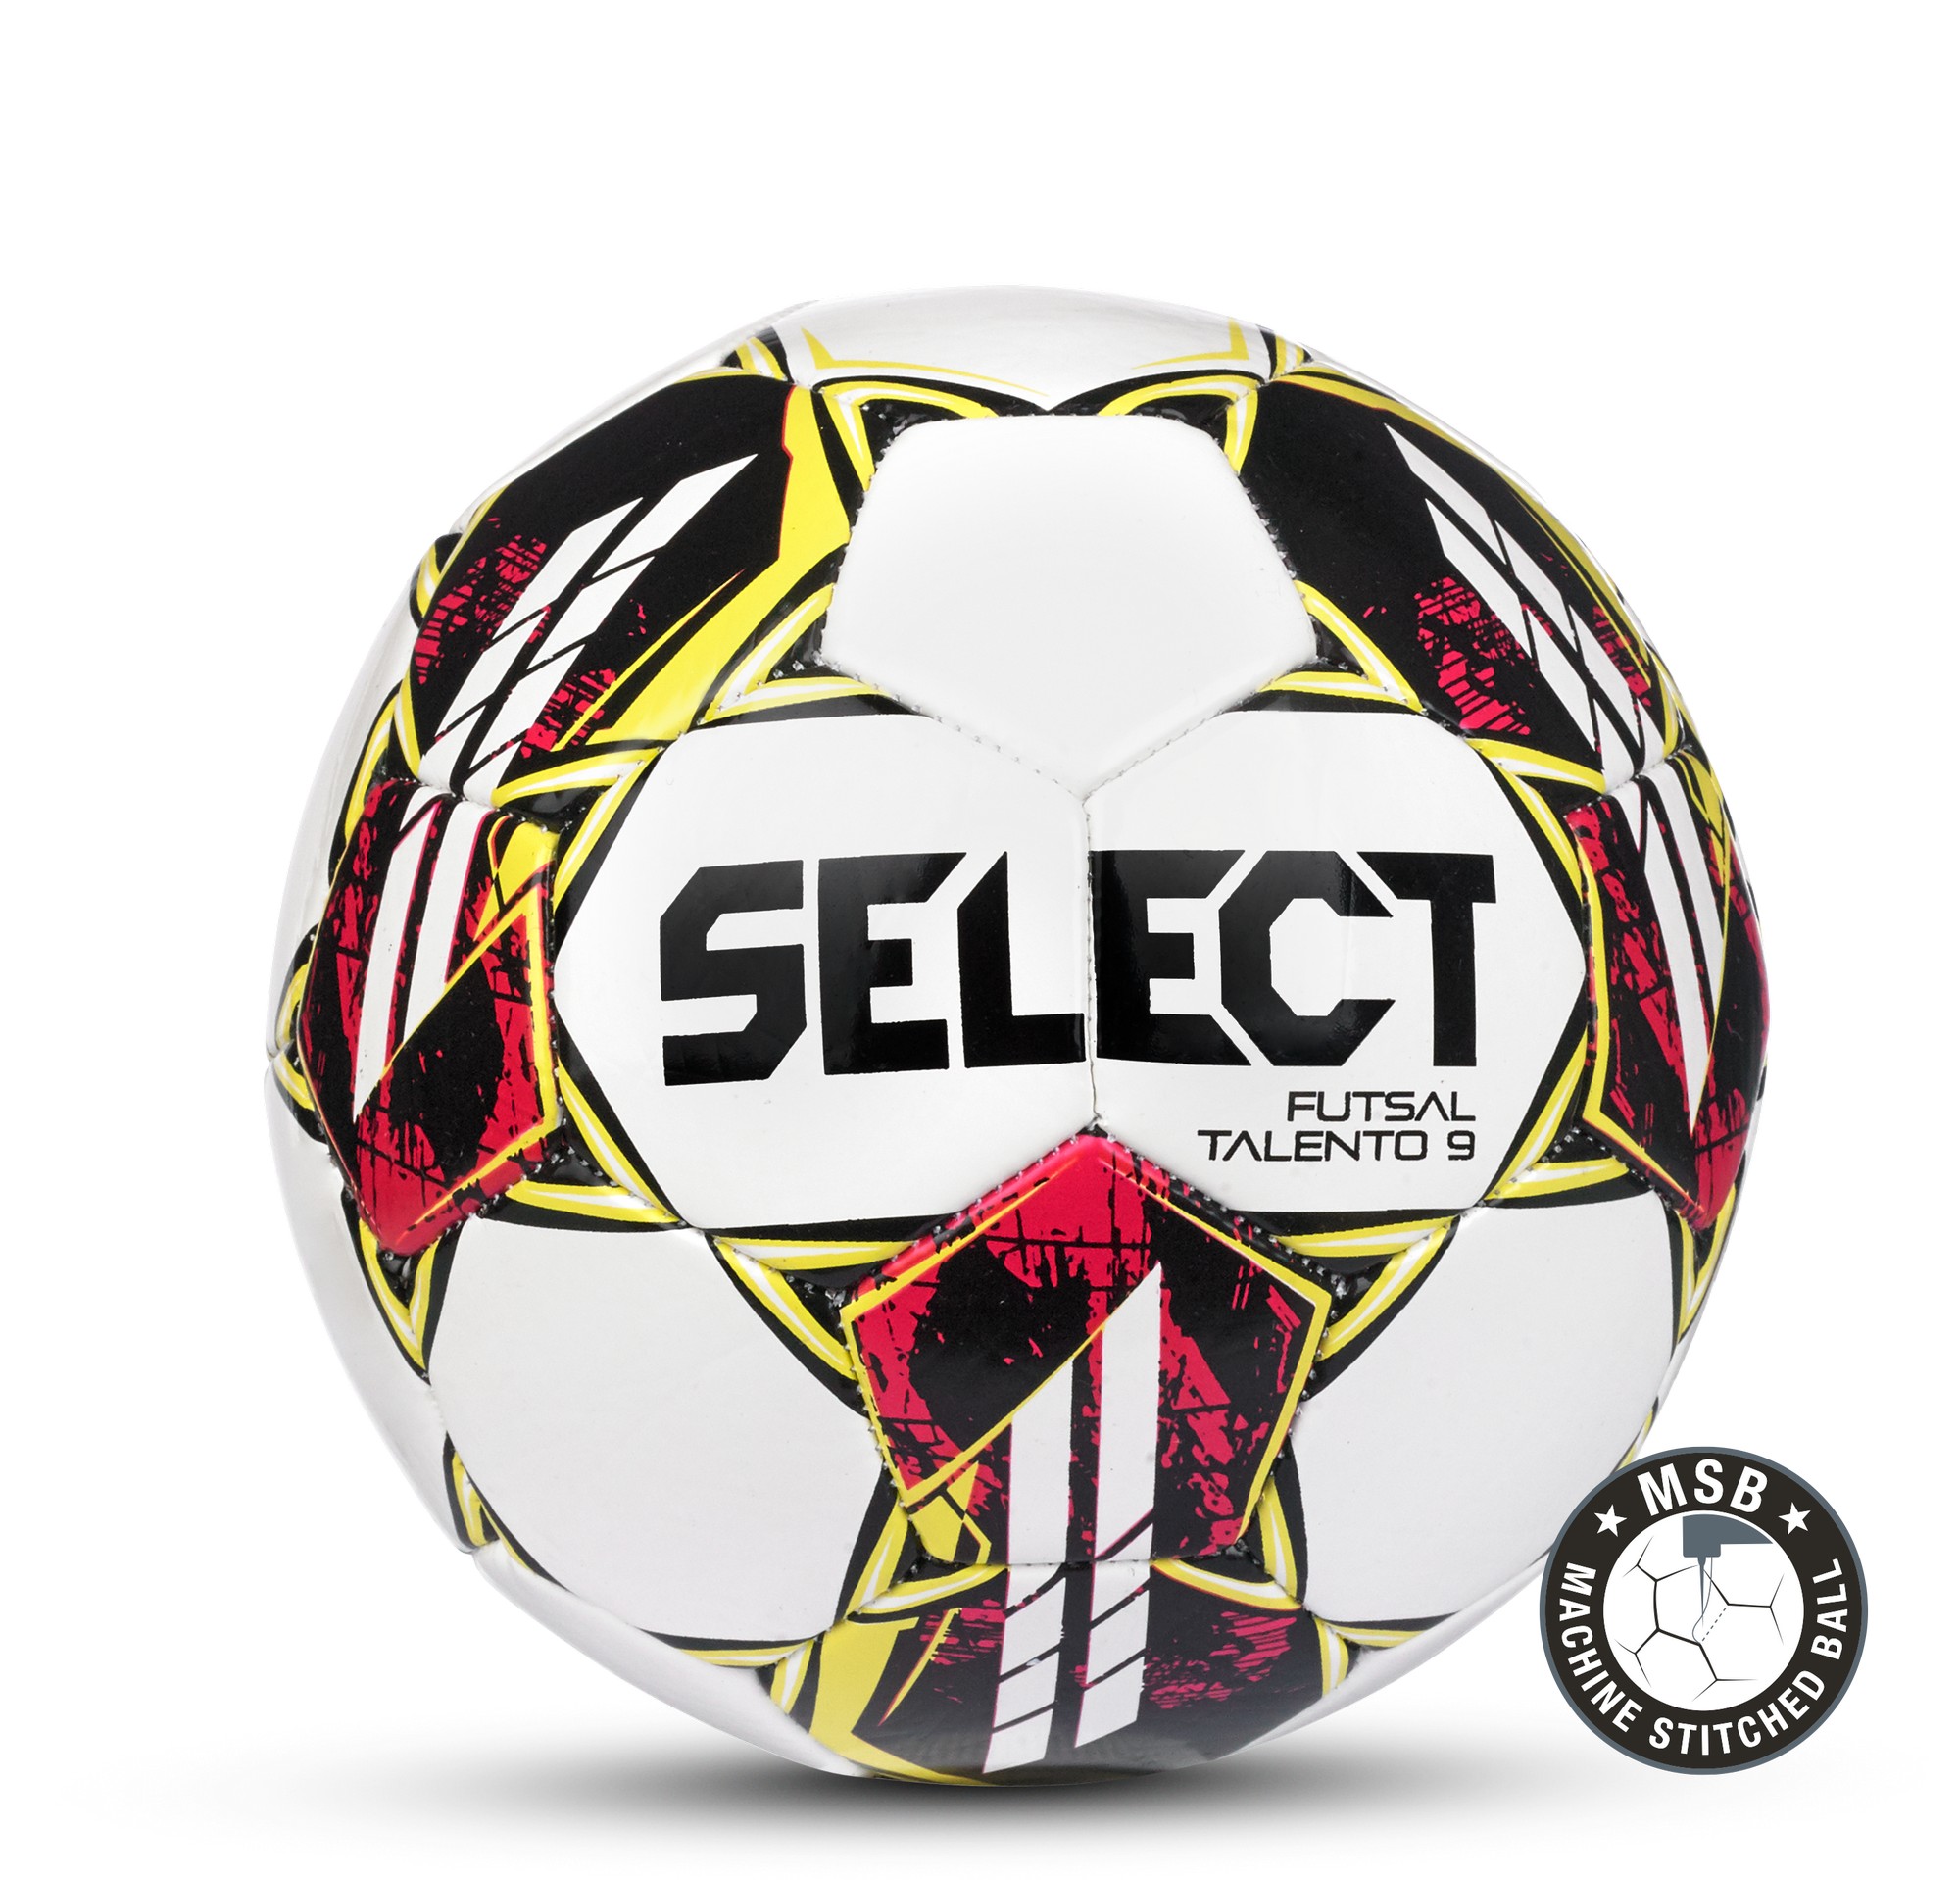 Футзальный мяч Select Futsal Talento 9 v22 1060460005,  - купить со скидкой